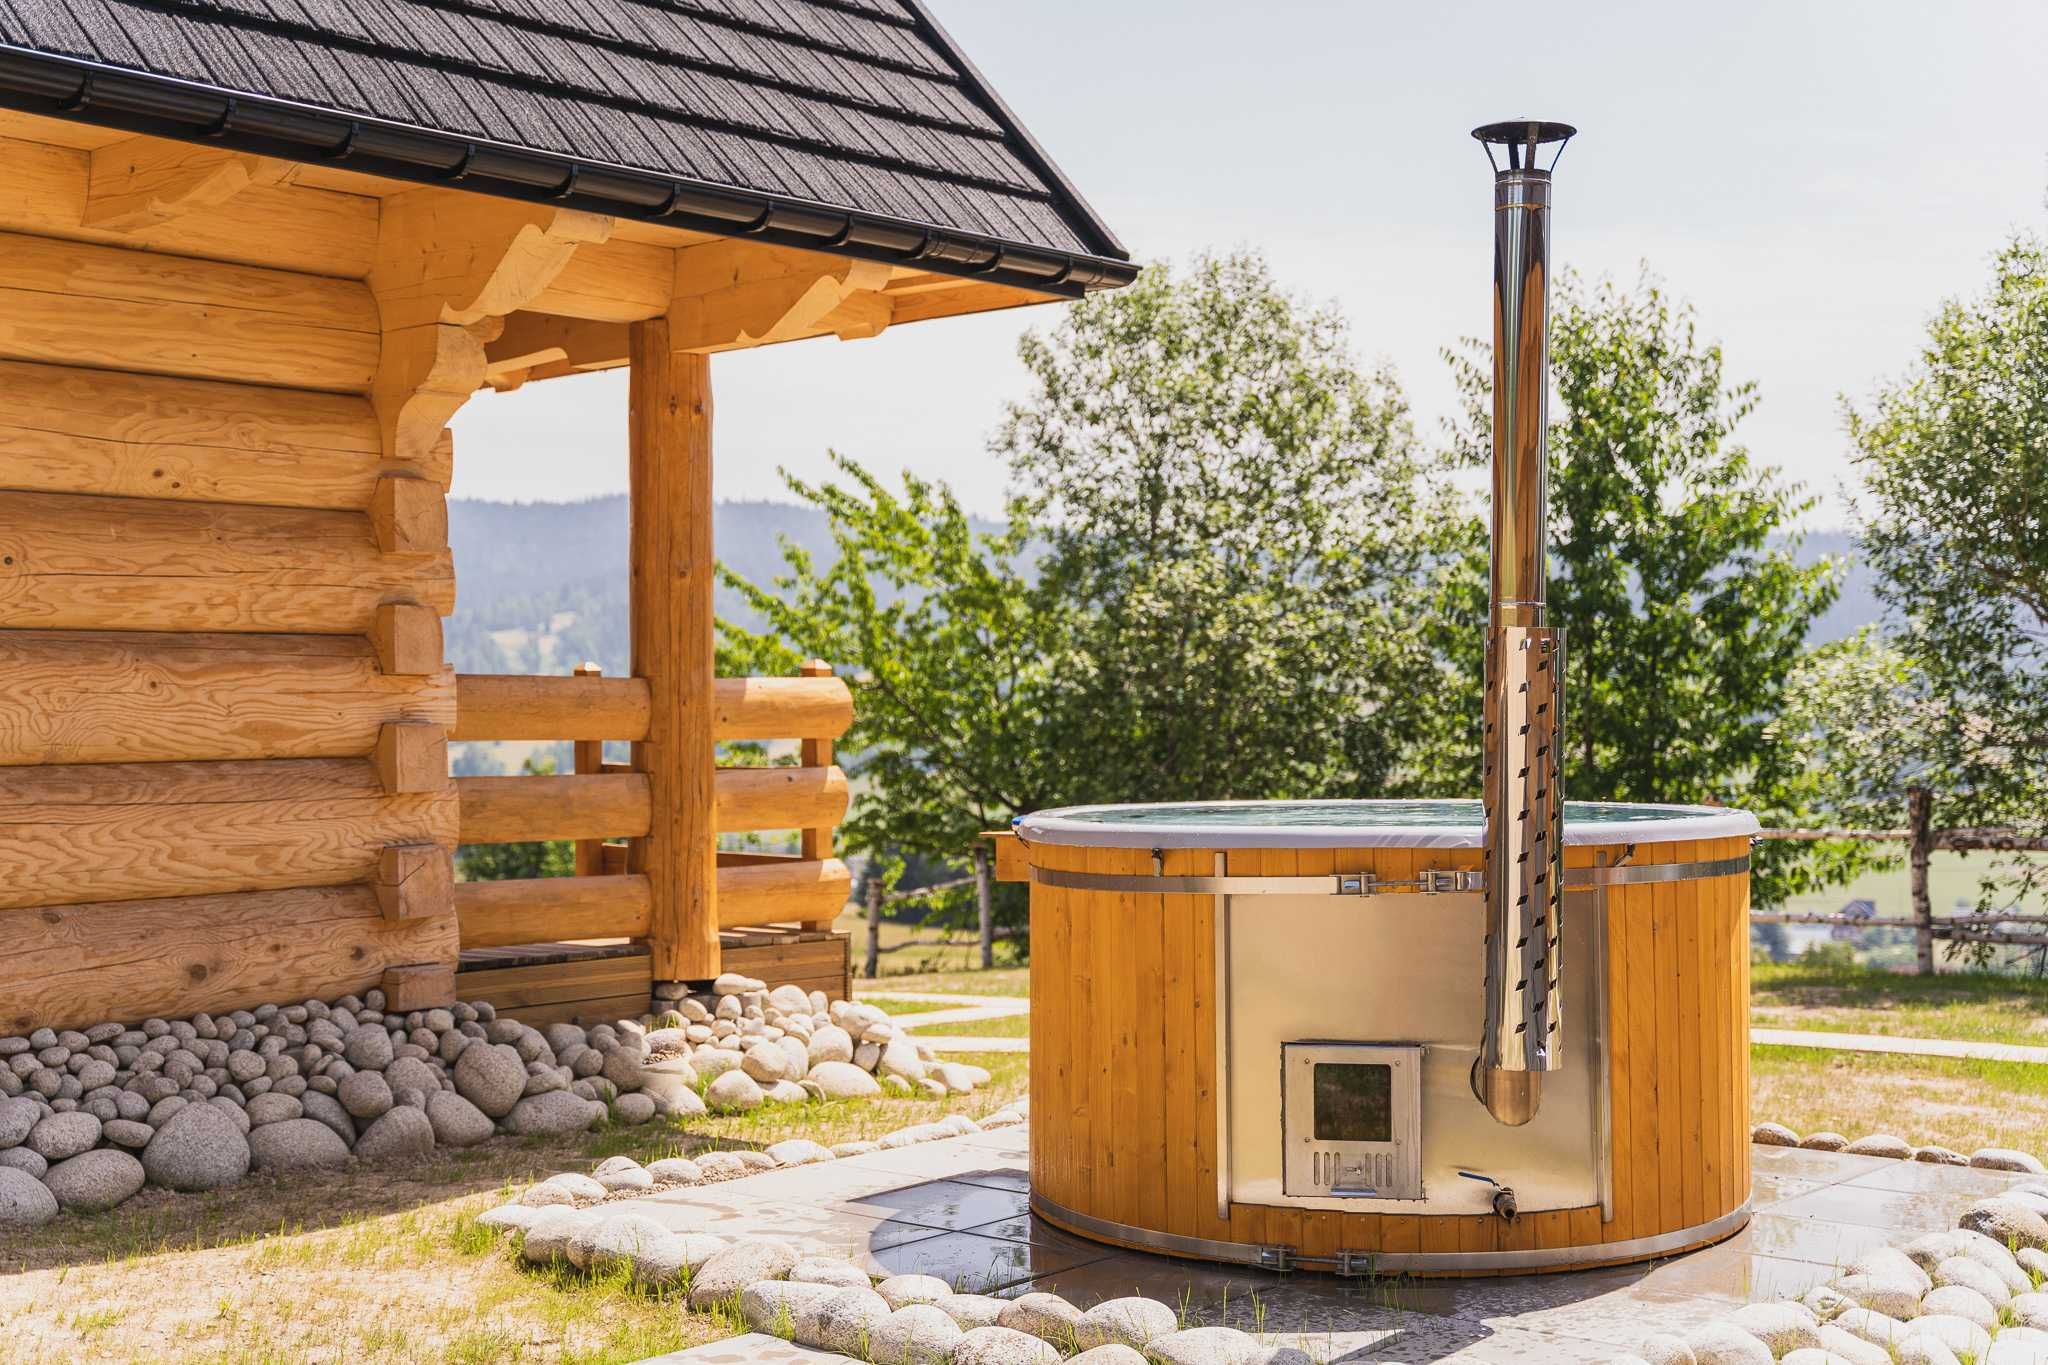 Góralski domek w górach balia jacuzzi sauna tatry gorce